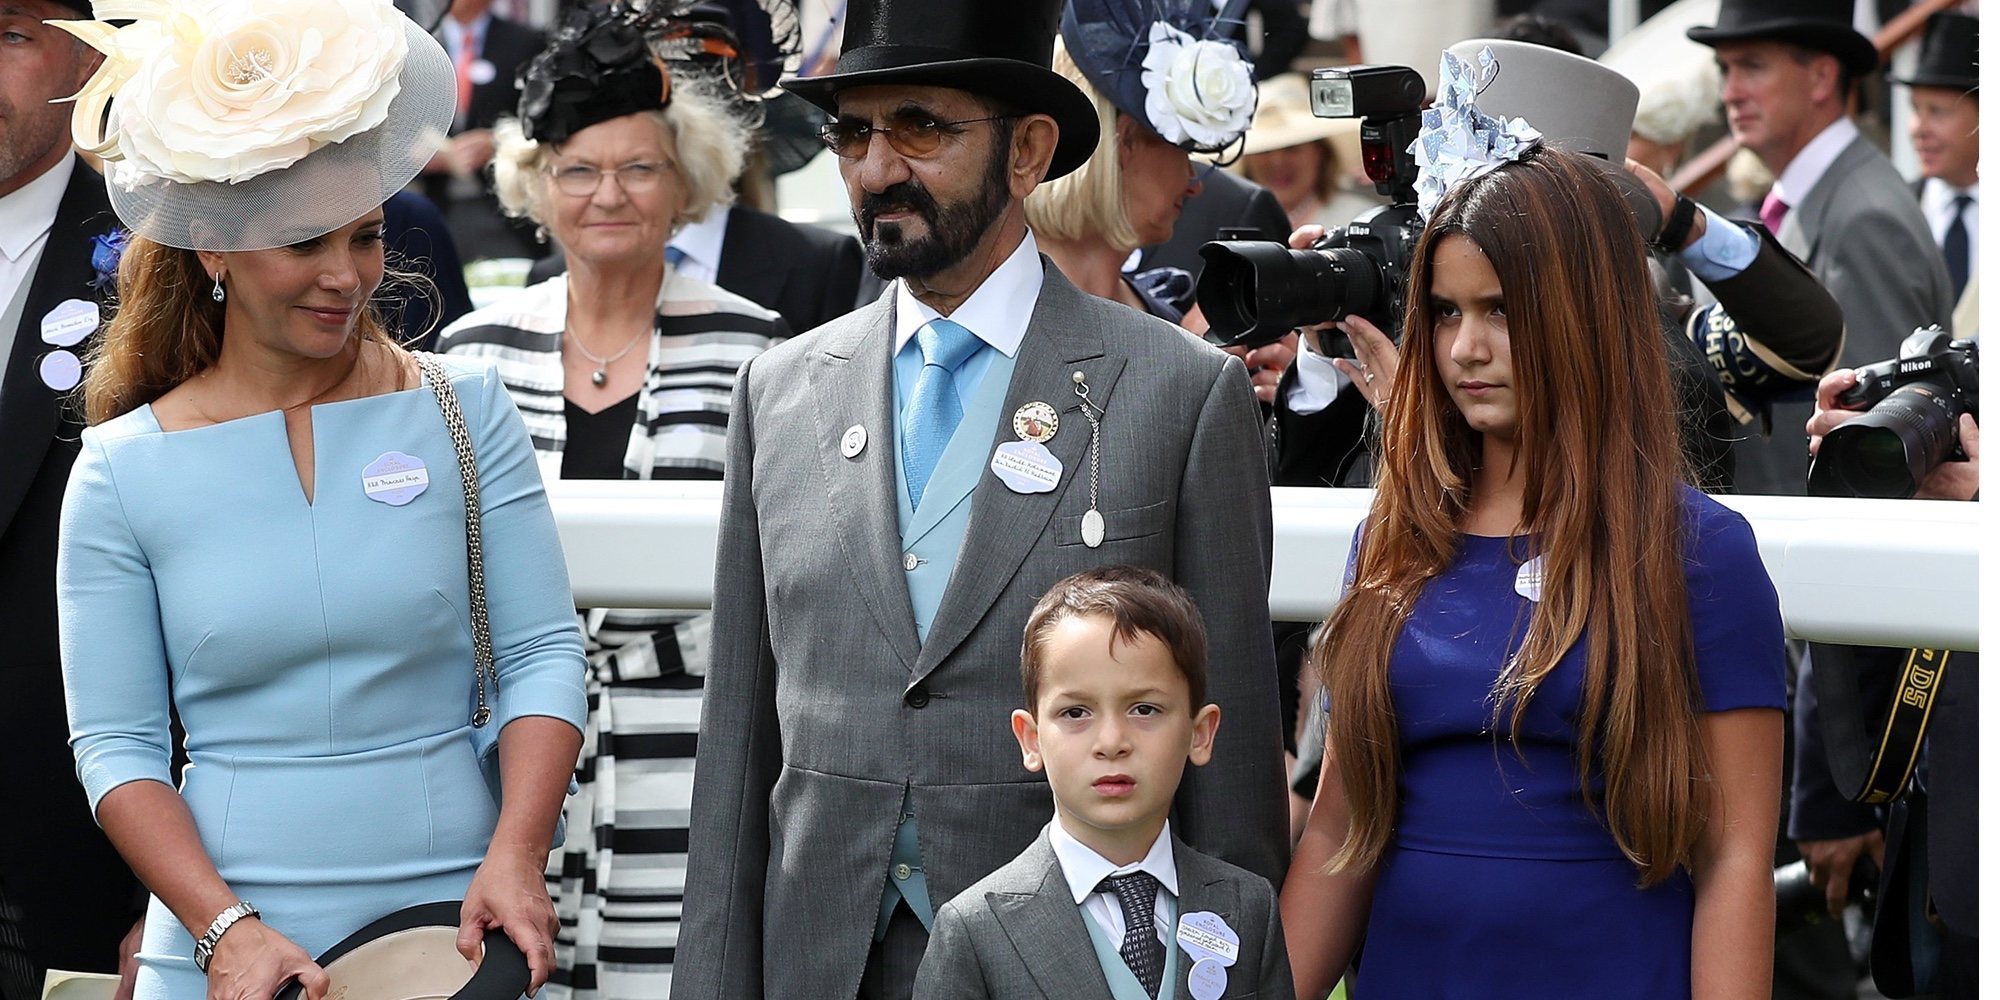 La Princesa Haya de Jordania pide el divorcio al Emir de Dubai y teme su respuesta